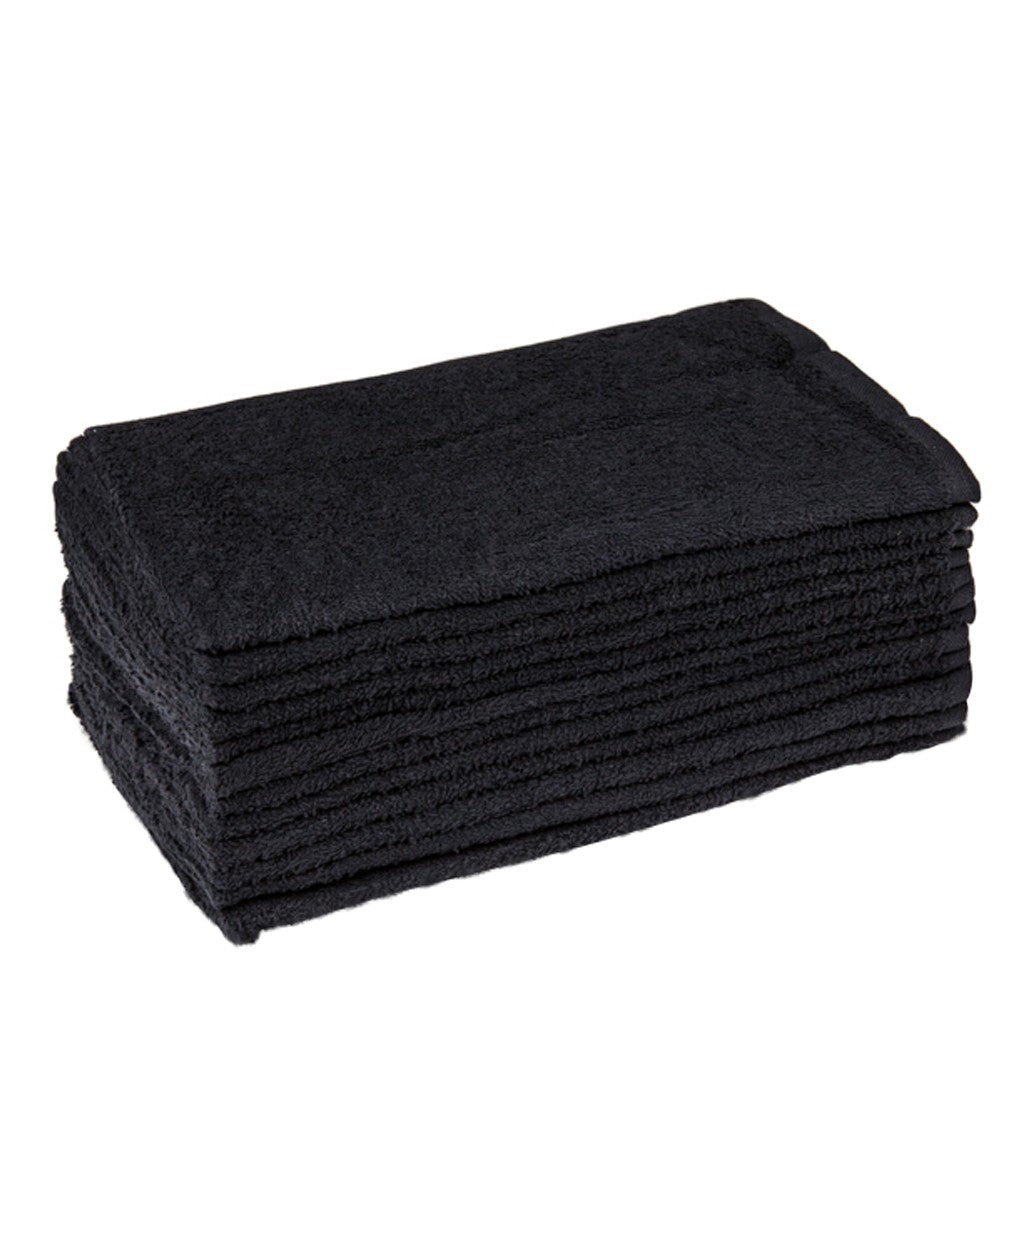 BLACK TOWELS